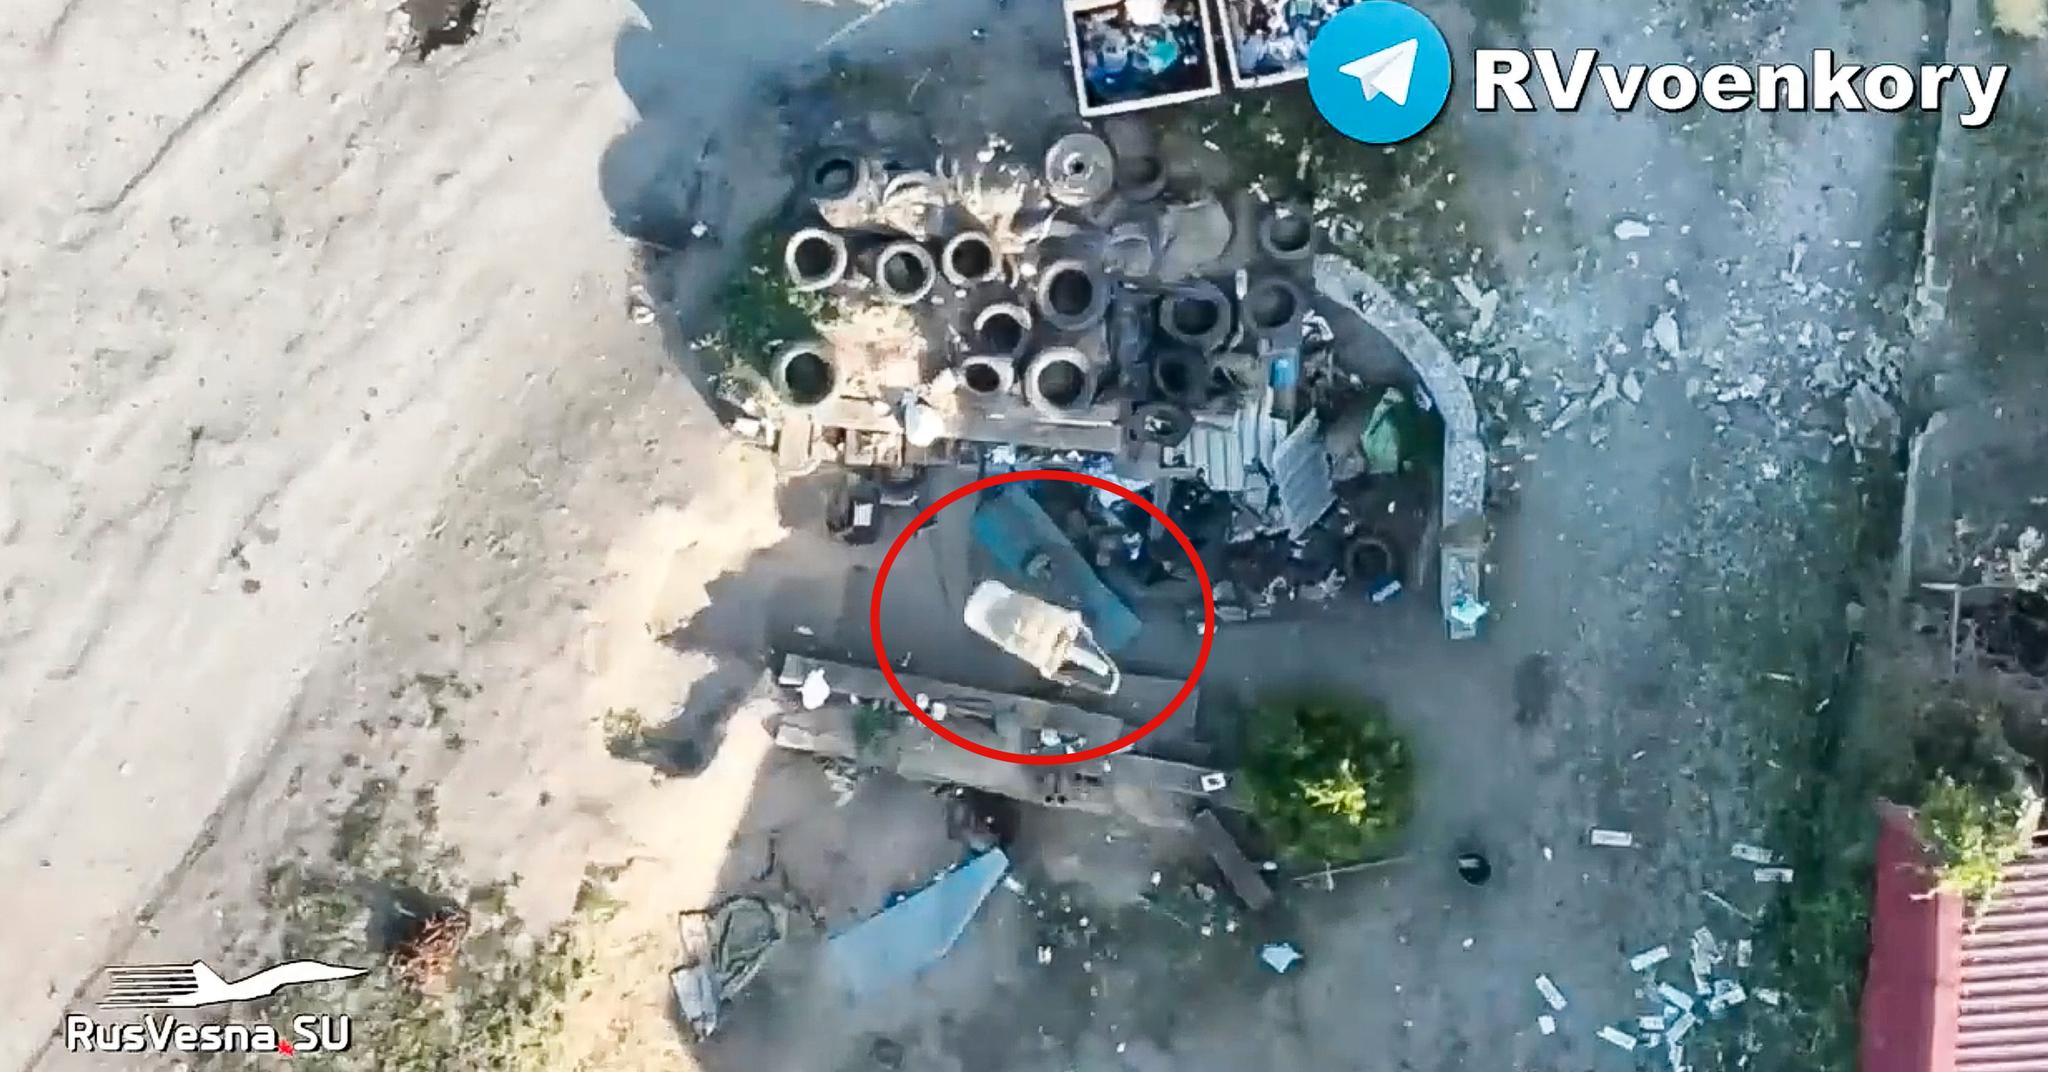 En russisk drone har nettopp sluppet en granat på ukrainske soldater som har søkt dekning. Øyeblikket blir fanget opp av dronens kamera.